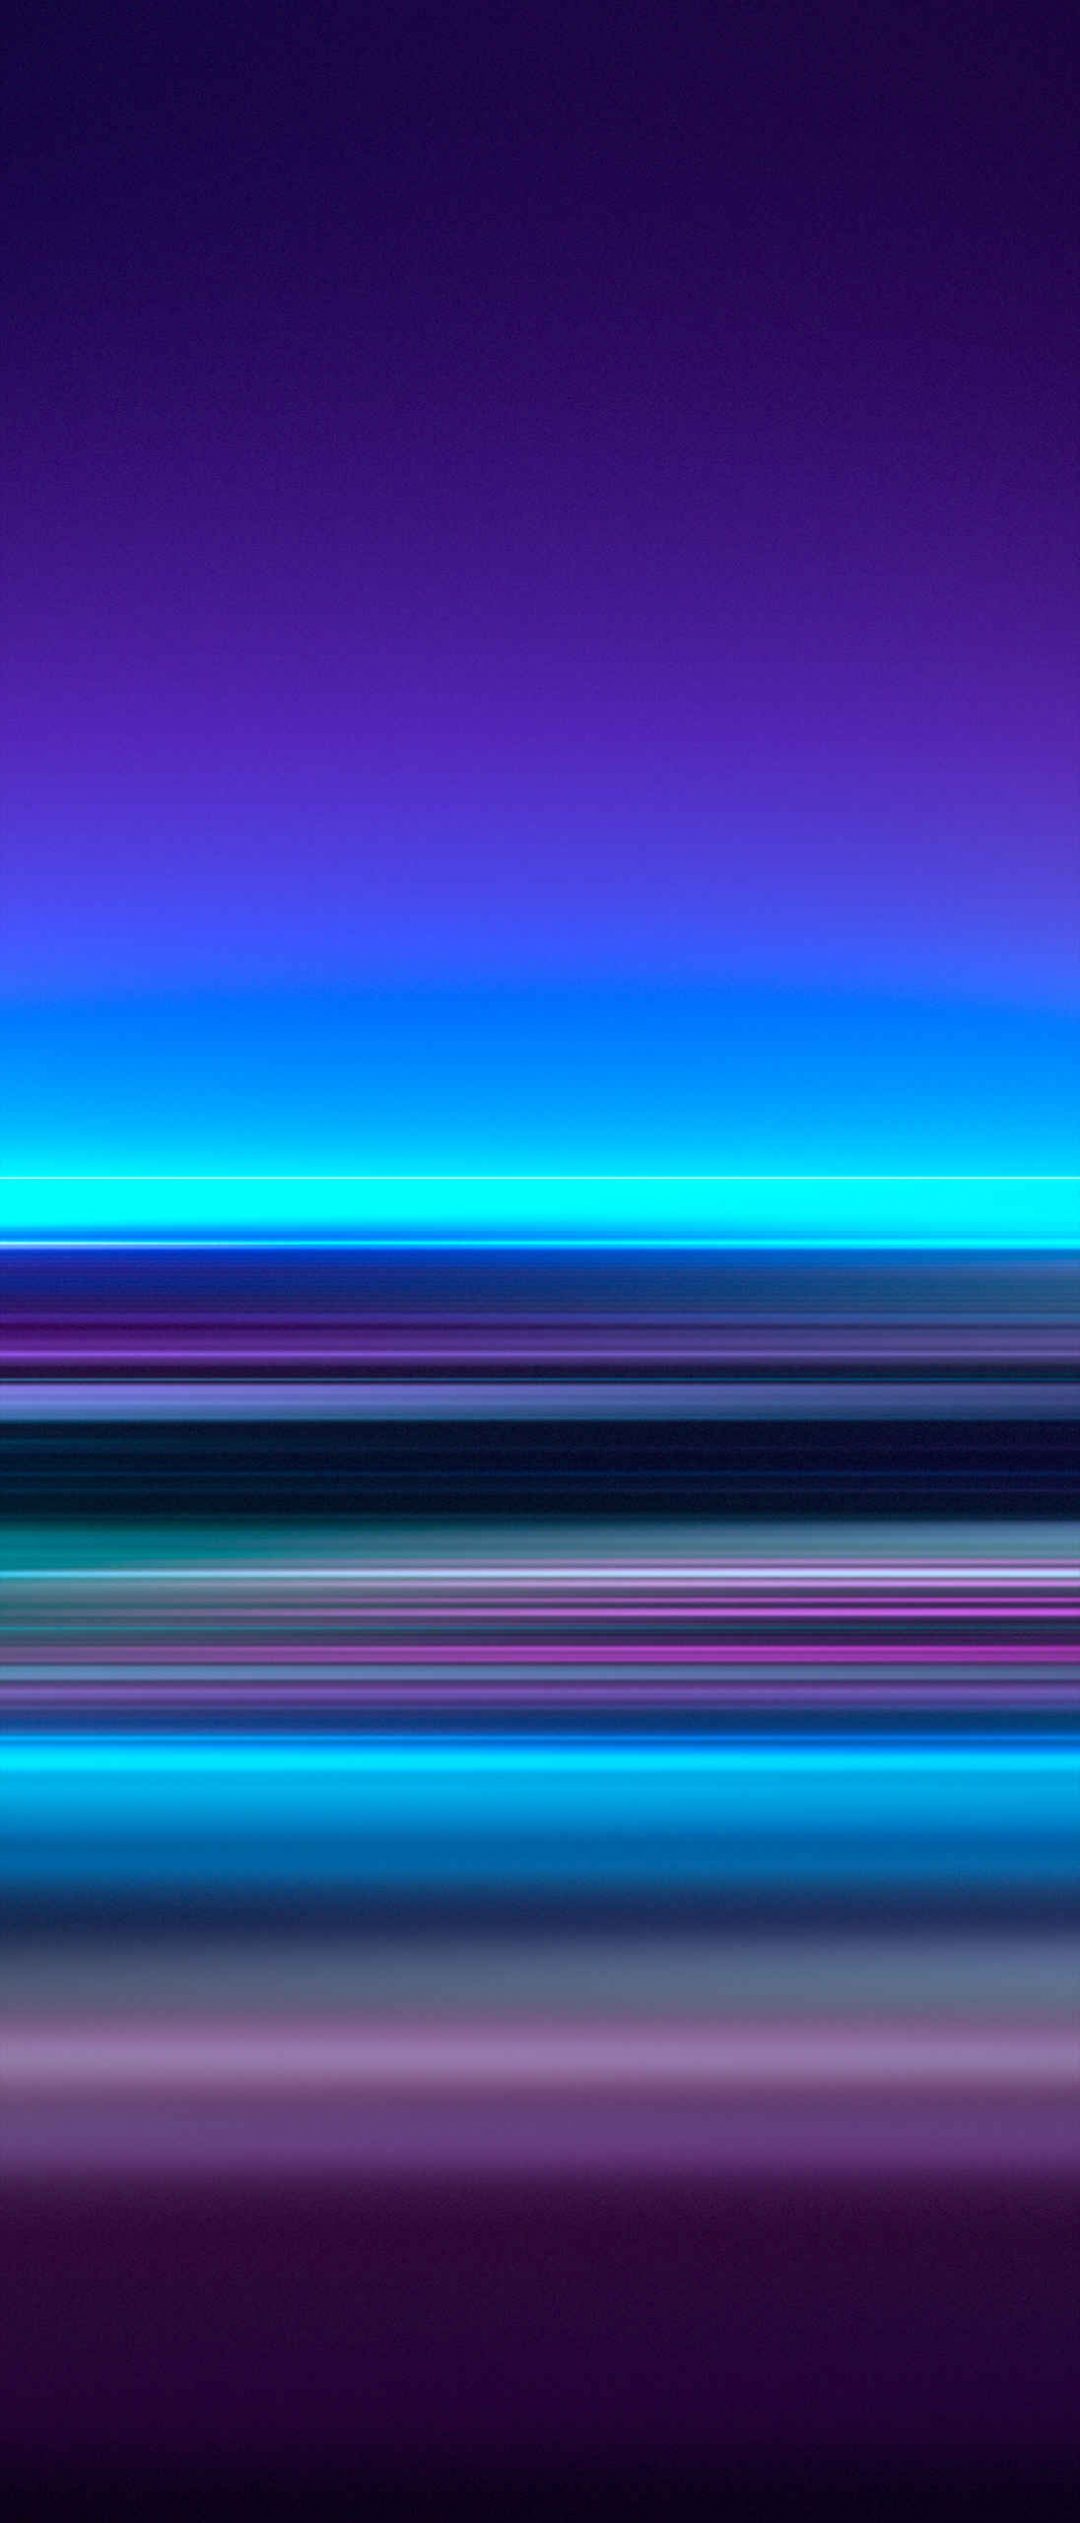 y1 fondo de pantalla,azul,violeta,púrpura,ligero,línea